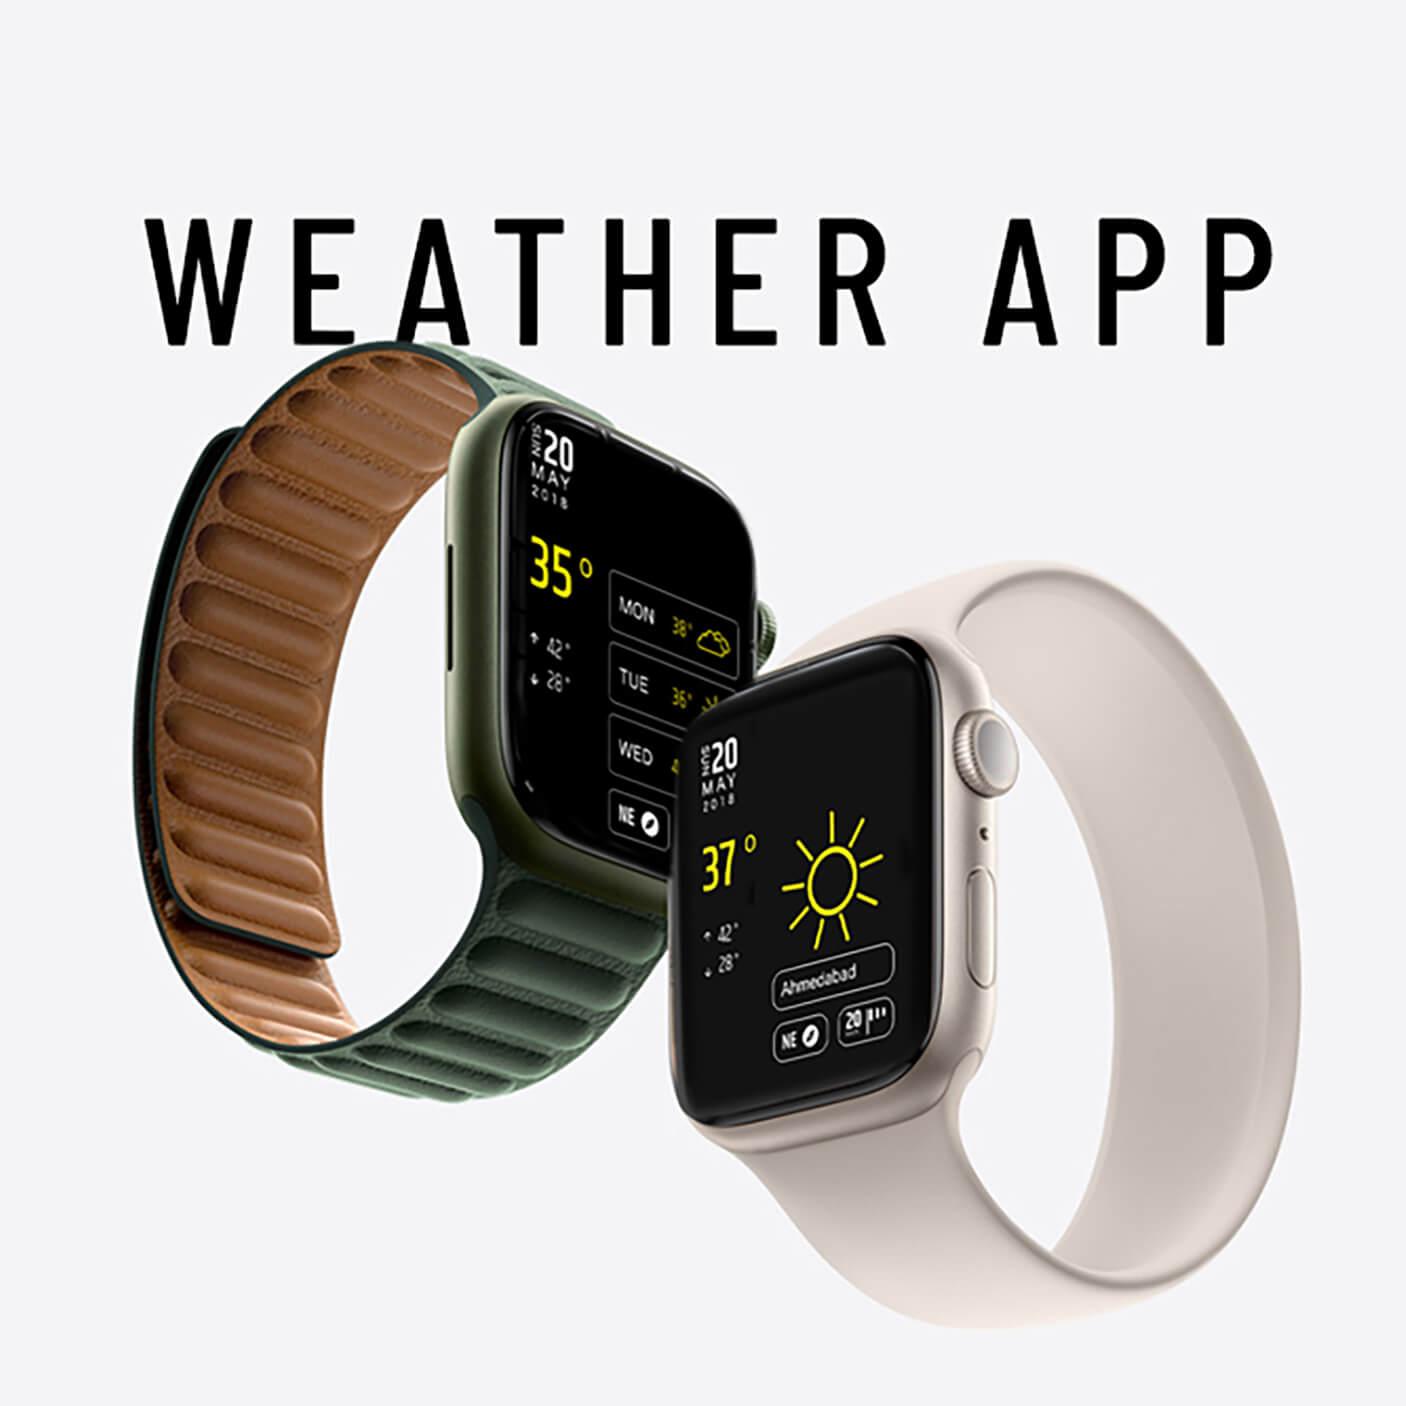 Weather App Branding